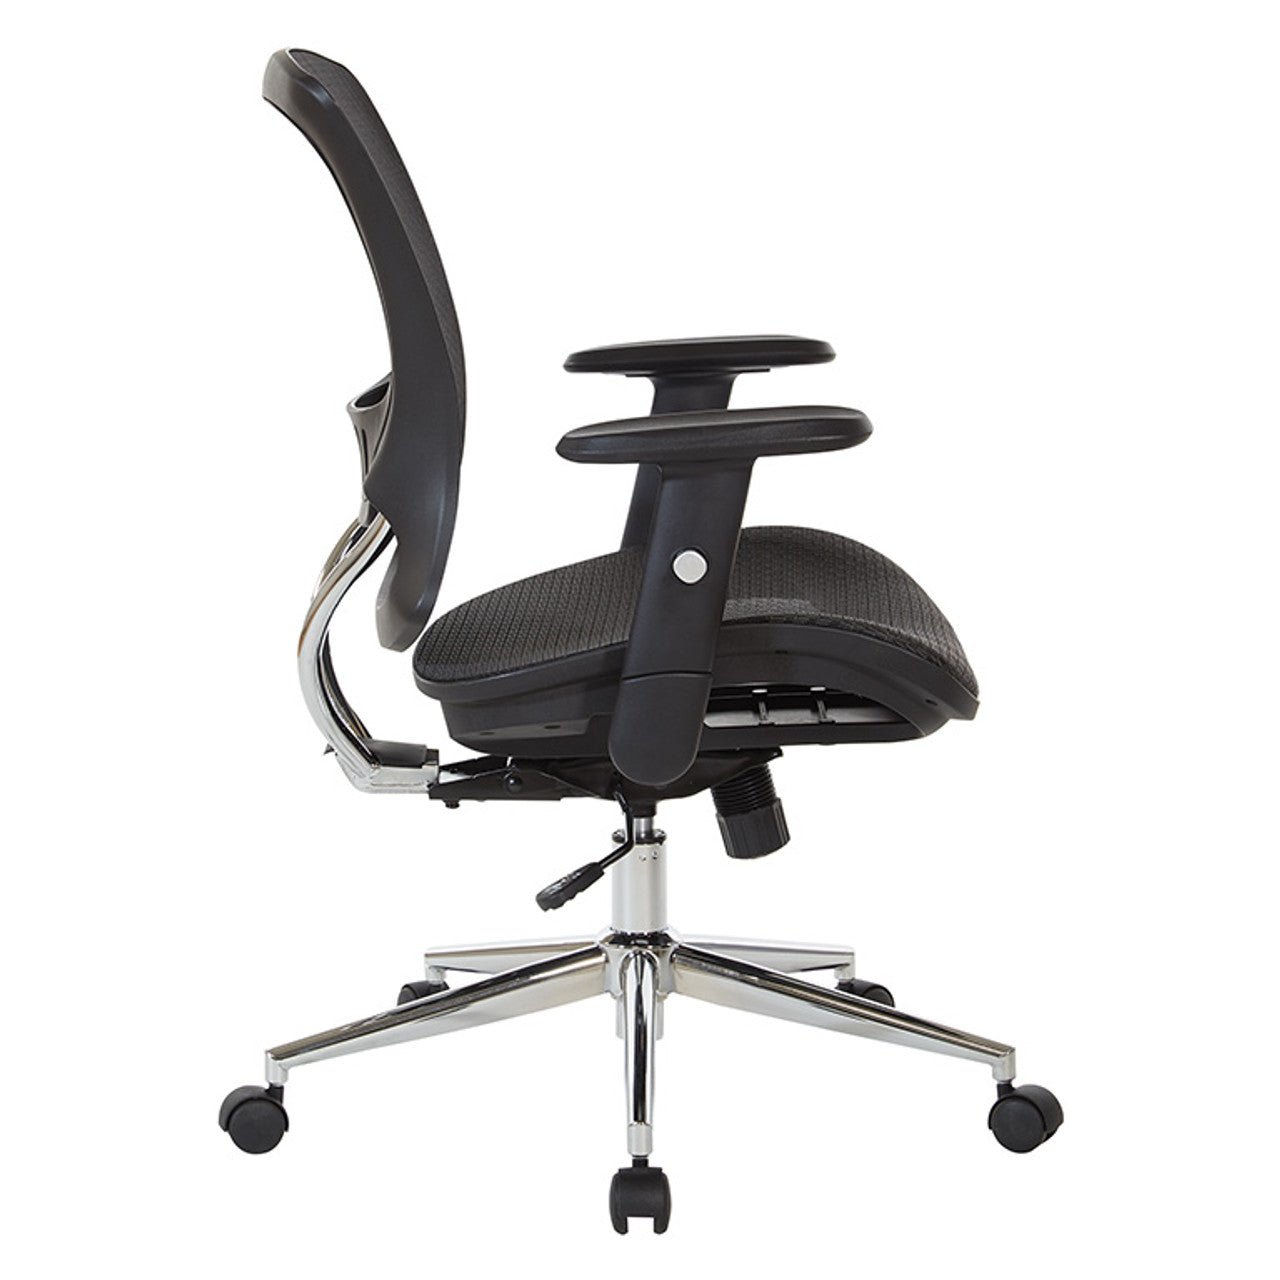 WorkSmart Mesh Screen Seat and Back Chair EM98910C-3 - Office Desks - EM98910C-3